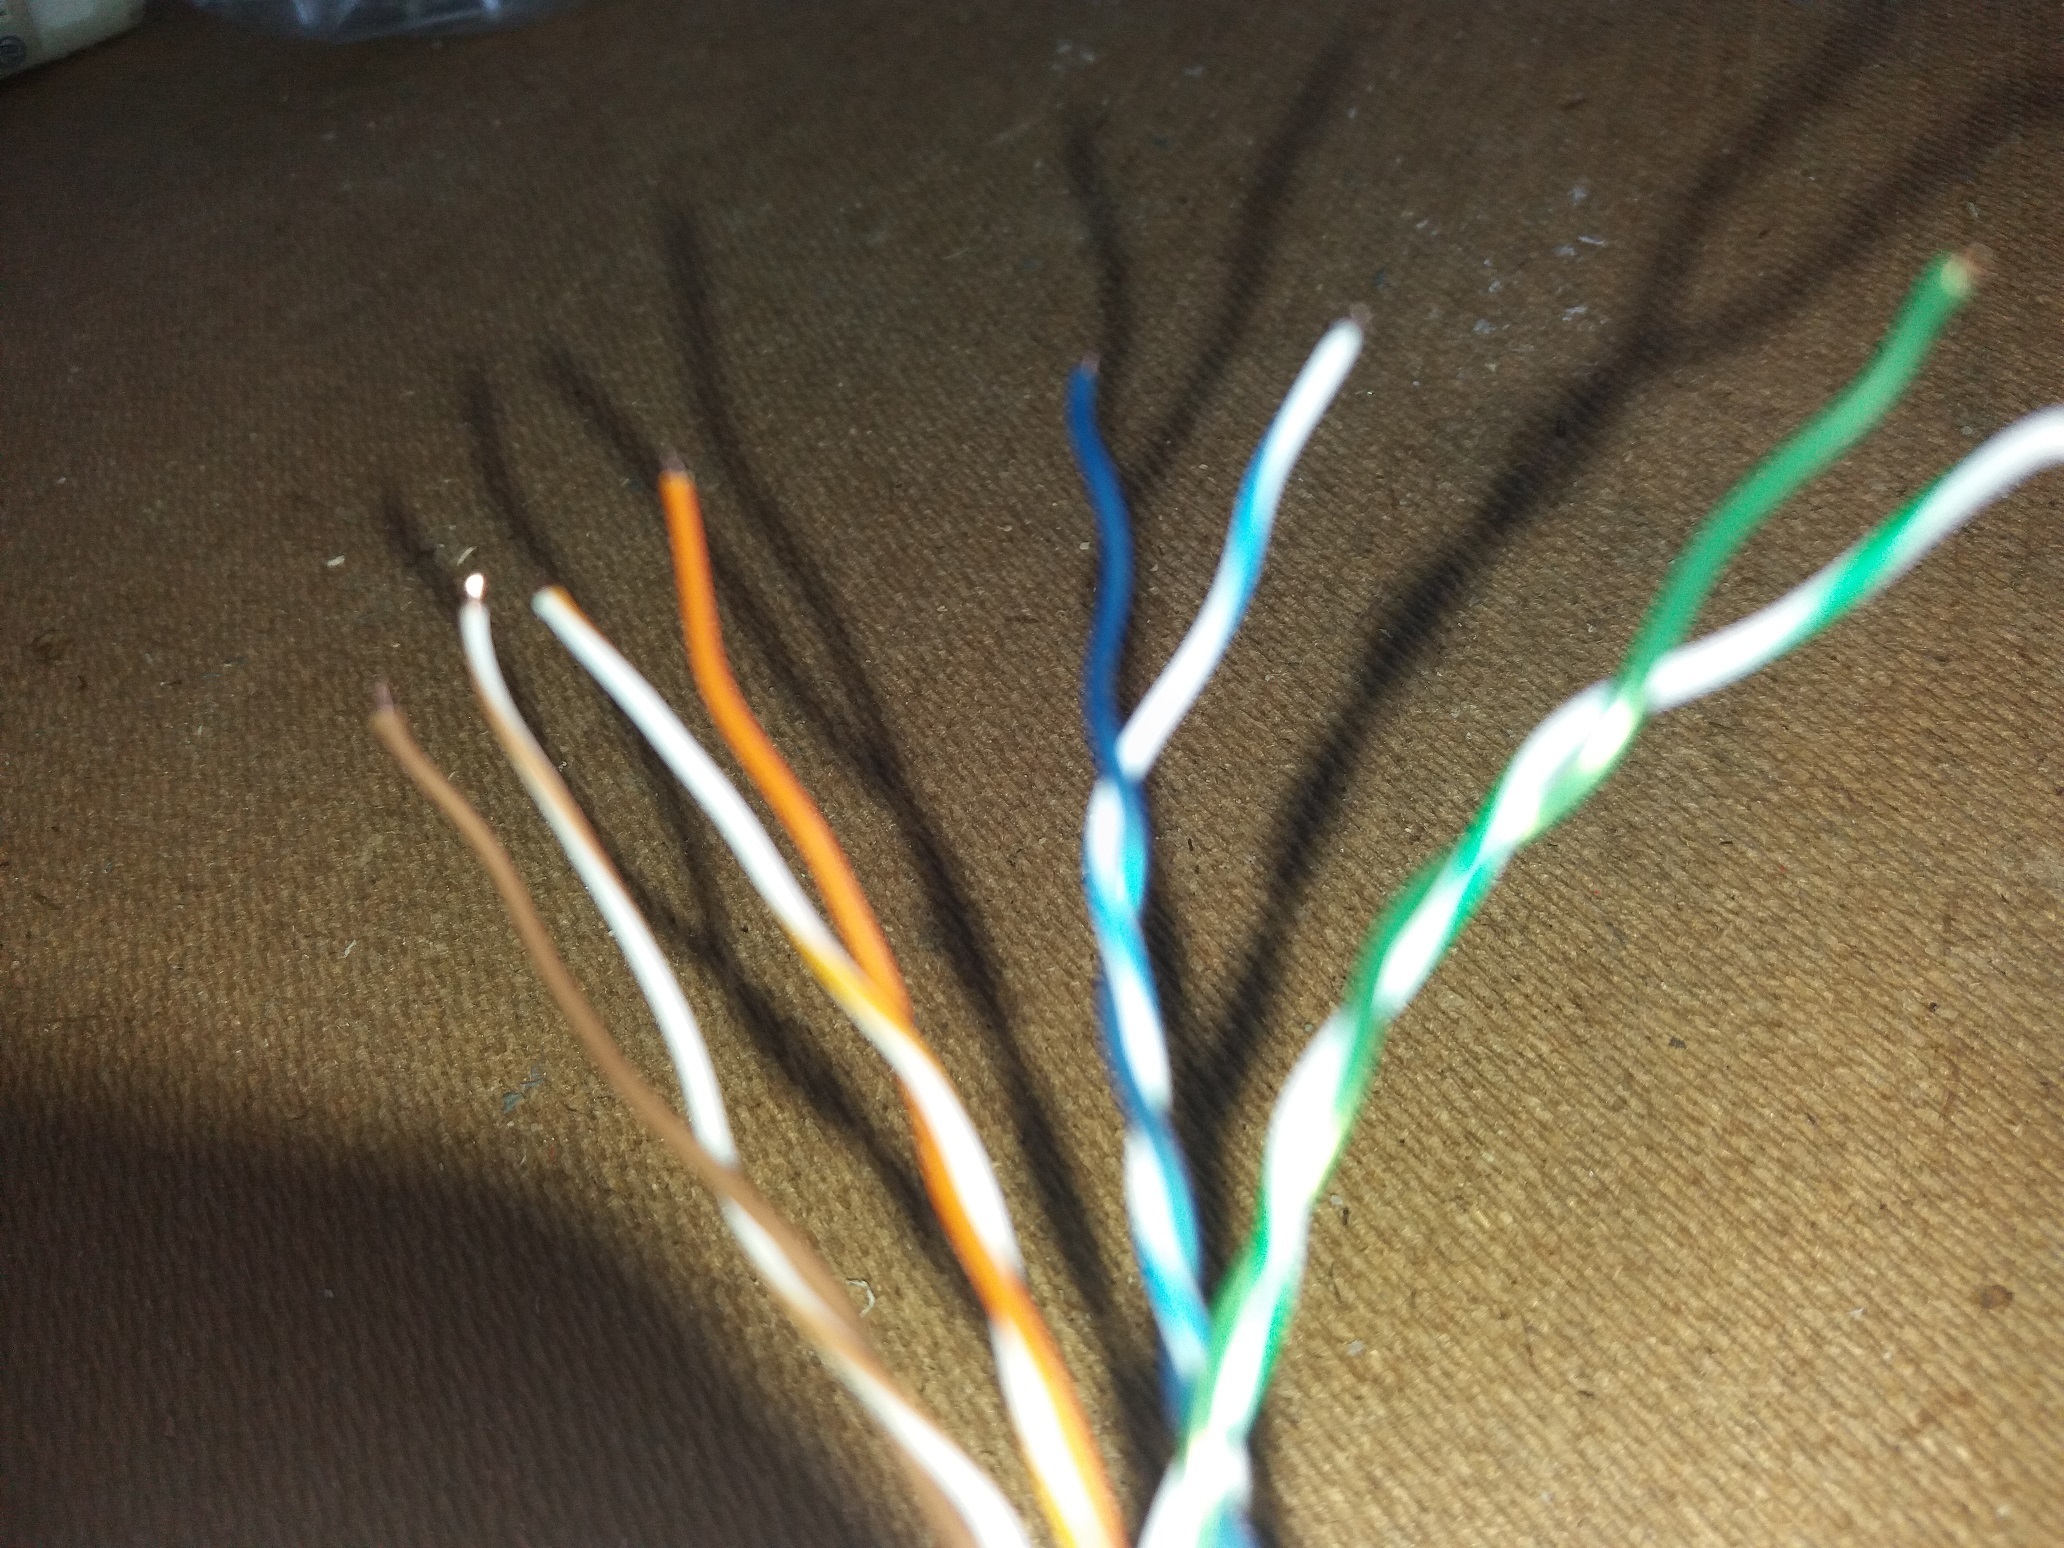 ondergronds Regelen Vaag Wat voor grond kabel heb ik nodig om de orginele blauwe kabel te verlengen  | KPN Community